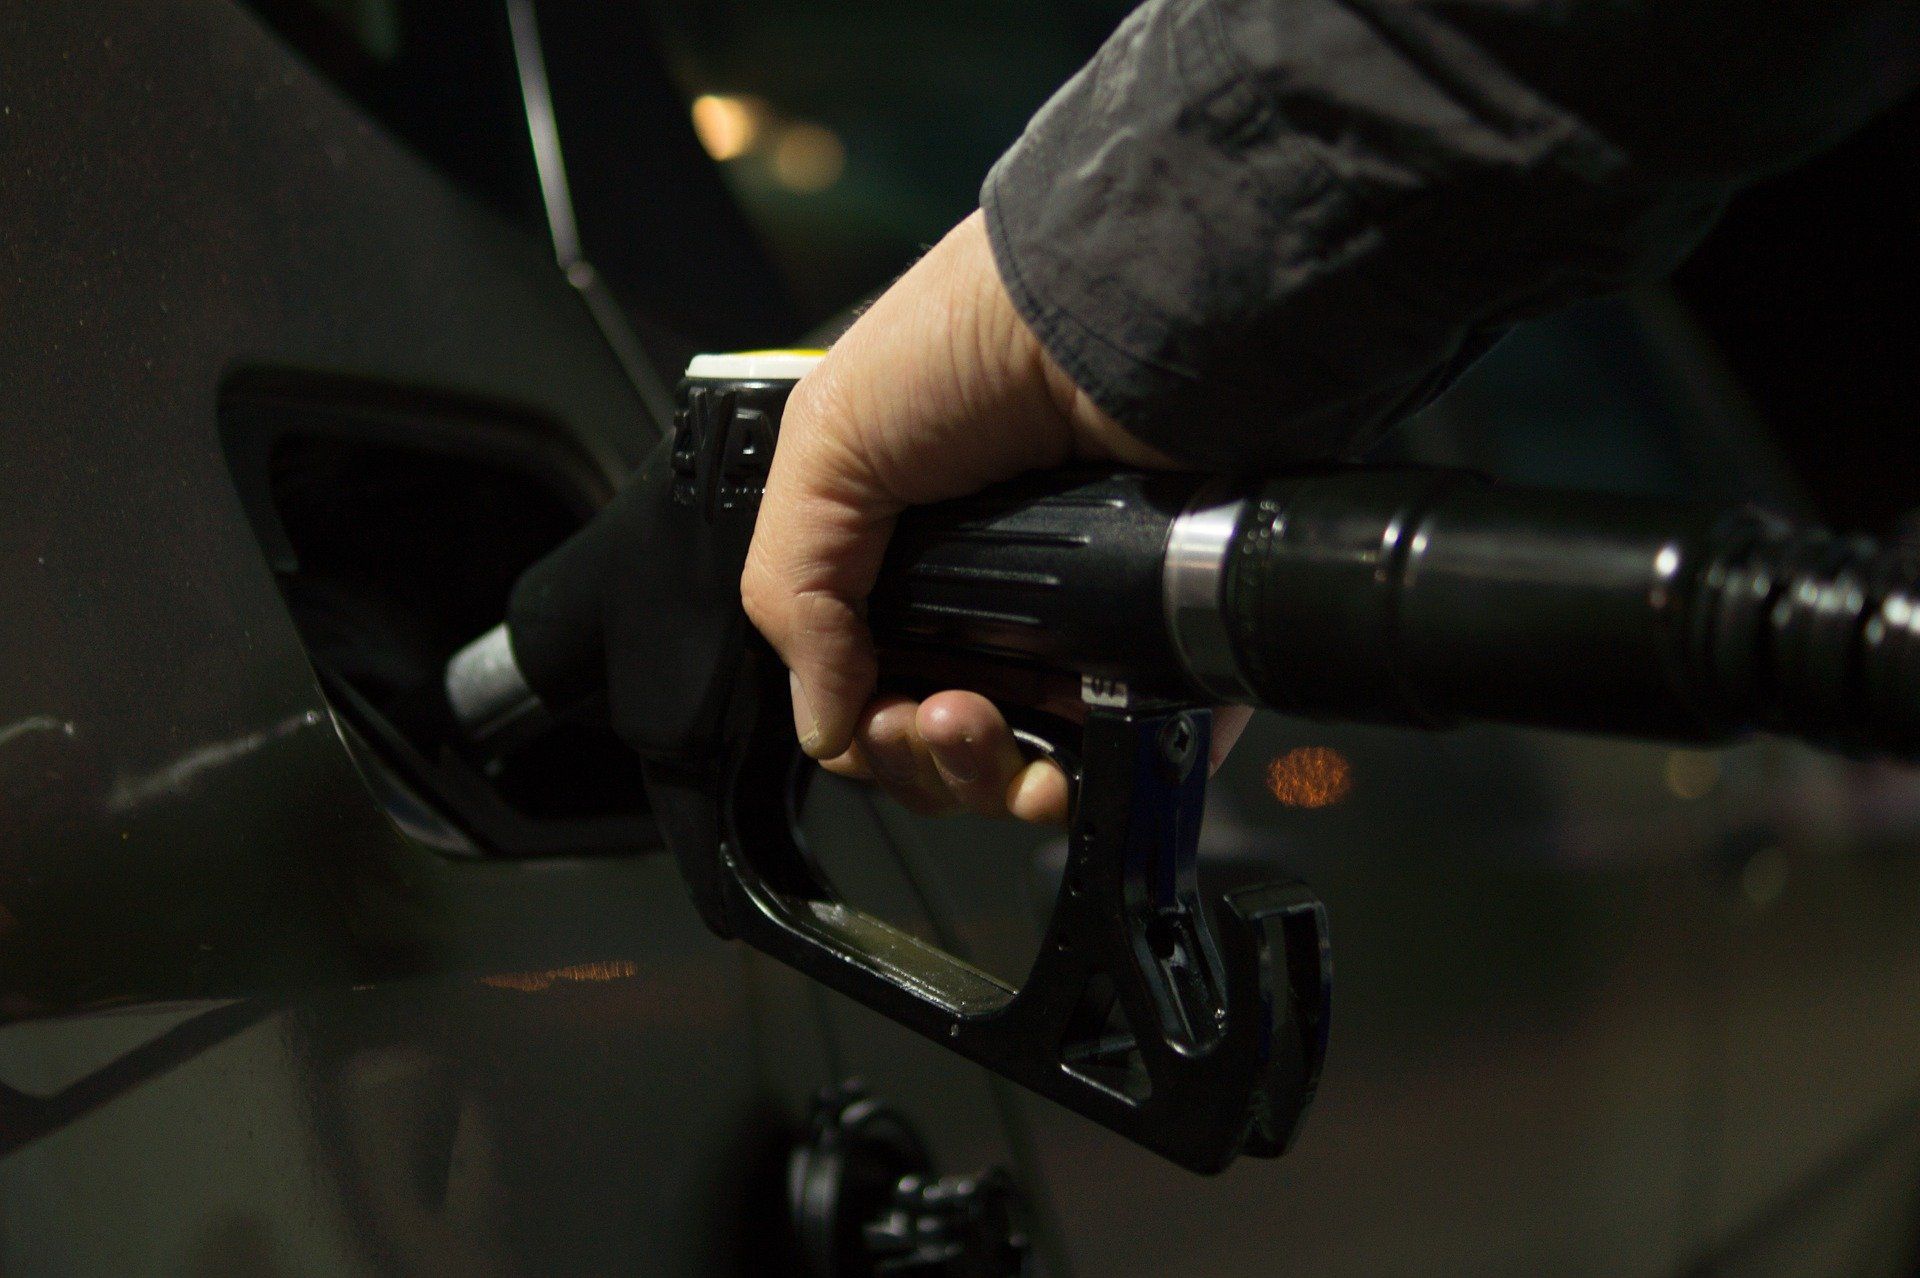 Fuel price June 9, 2022: Petrol Rs 96.72, diesel Rs 89.62 in Delhi